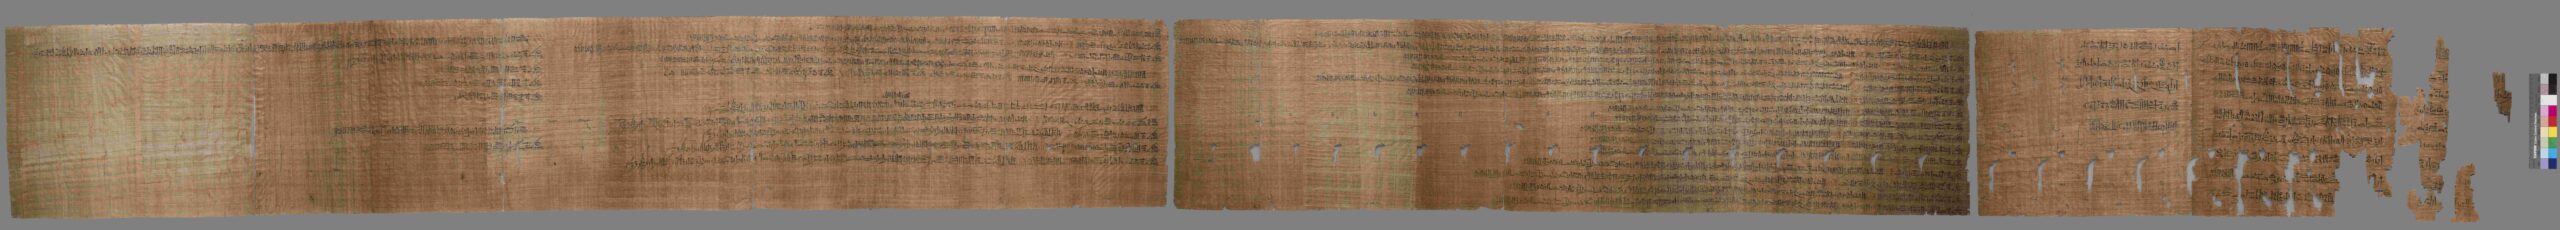 Museo Egizio di Torino Galleria della Scrittura Il papiro della congiura dell’Harem. Nuovo Regno (1187-1150 a.C.)